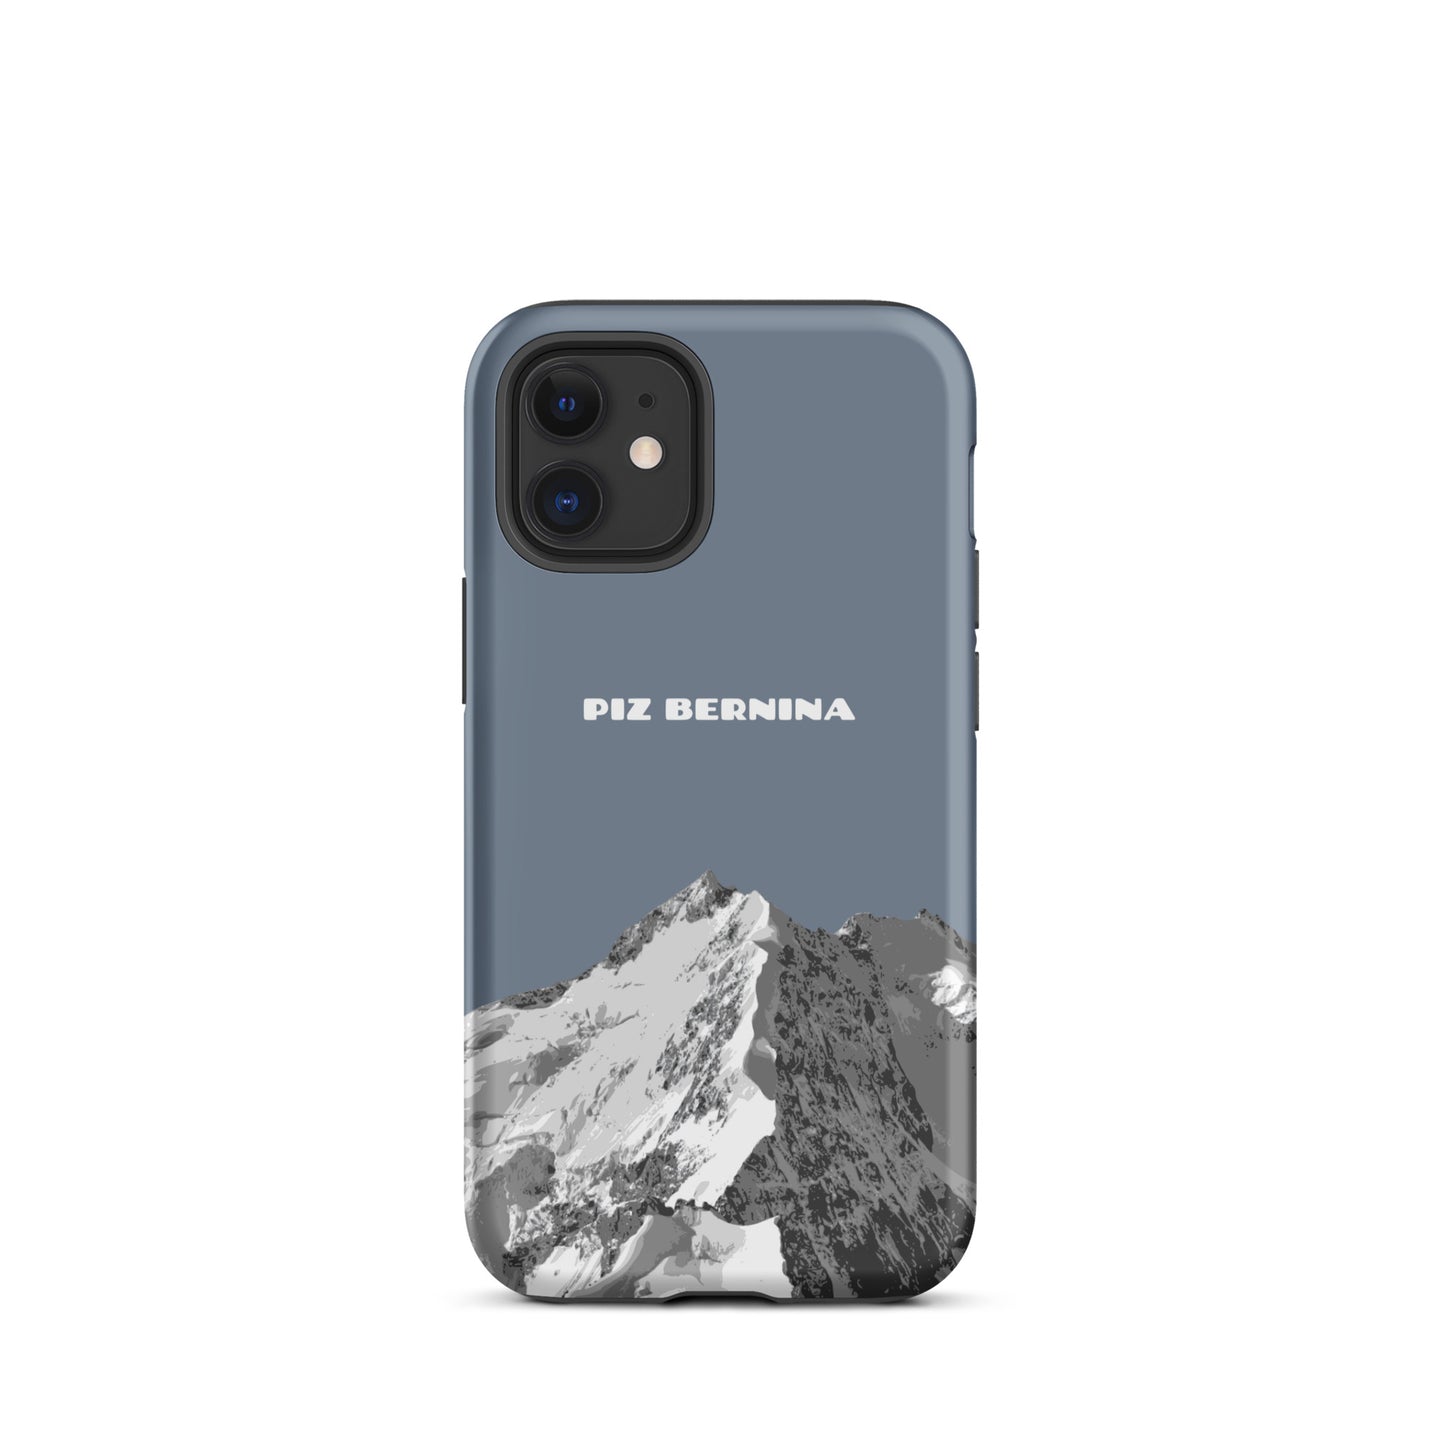 Hülle für das iPhone 12 Mini von Apple in der Farbe Schiefergrau, dass den Piz Bernina in Graubünden zeigt.